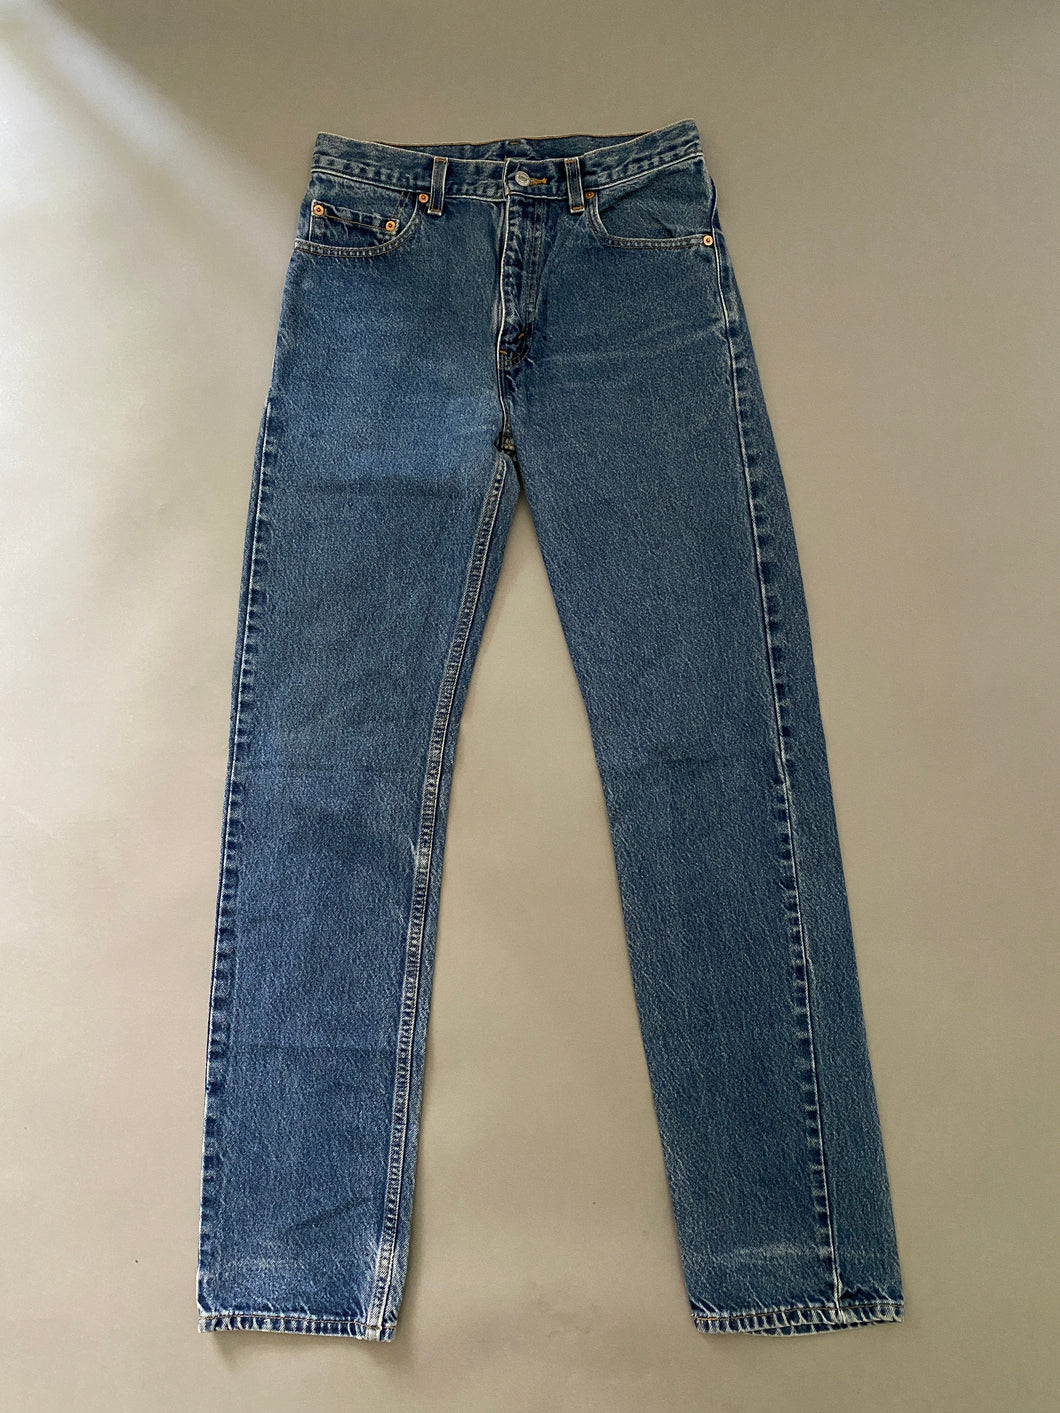 Levis 554 Vintage Jeans – Ropa Chidx